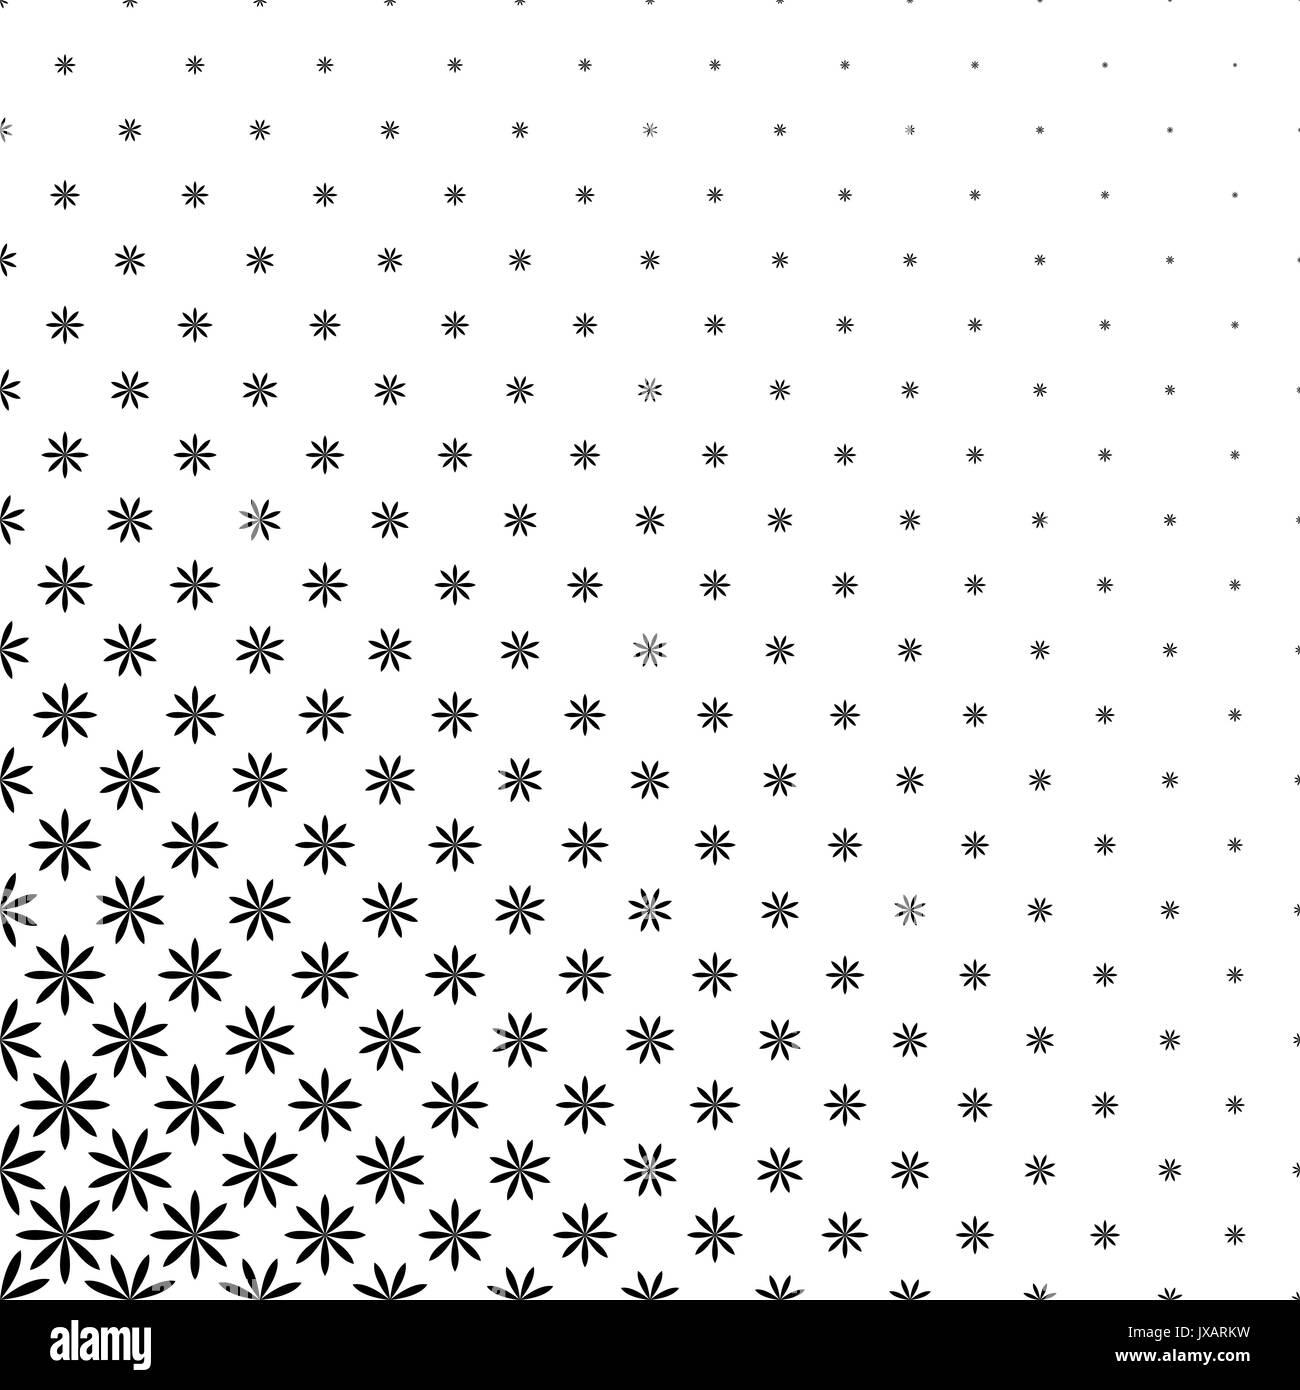 Motif de fleurs stylisées géométriques monochromatiques - abstract floral background vector graphic design Illustration de Vecteur